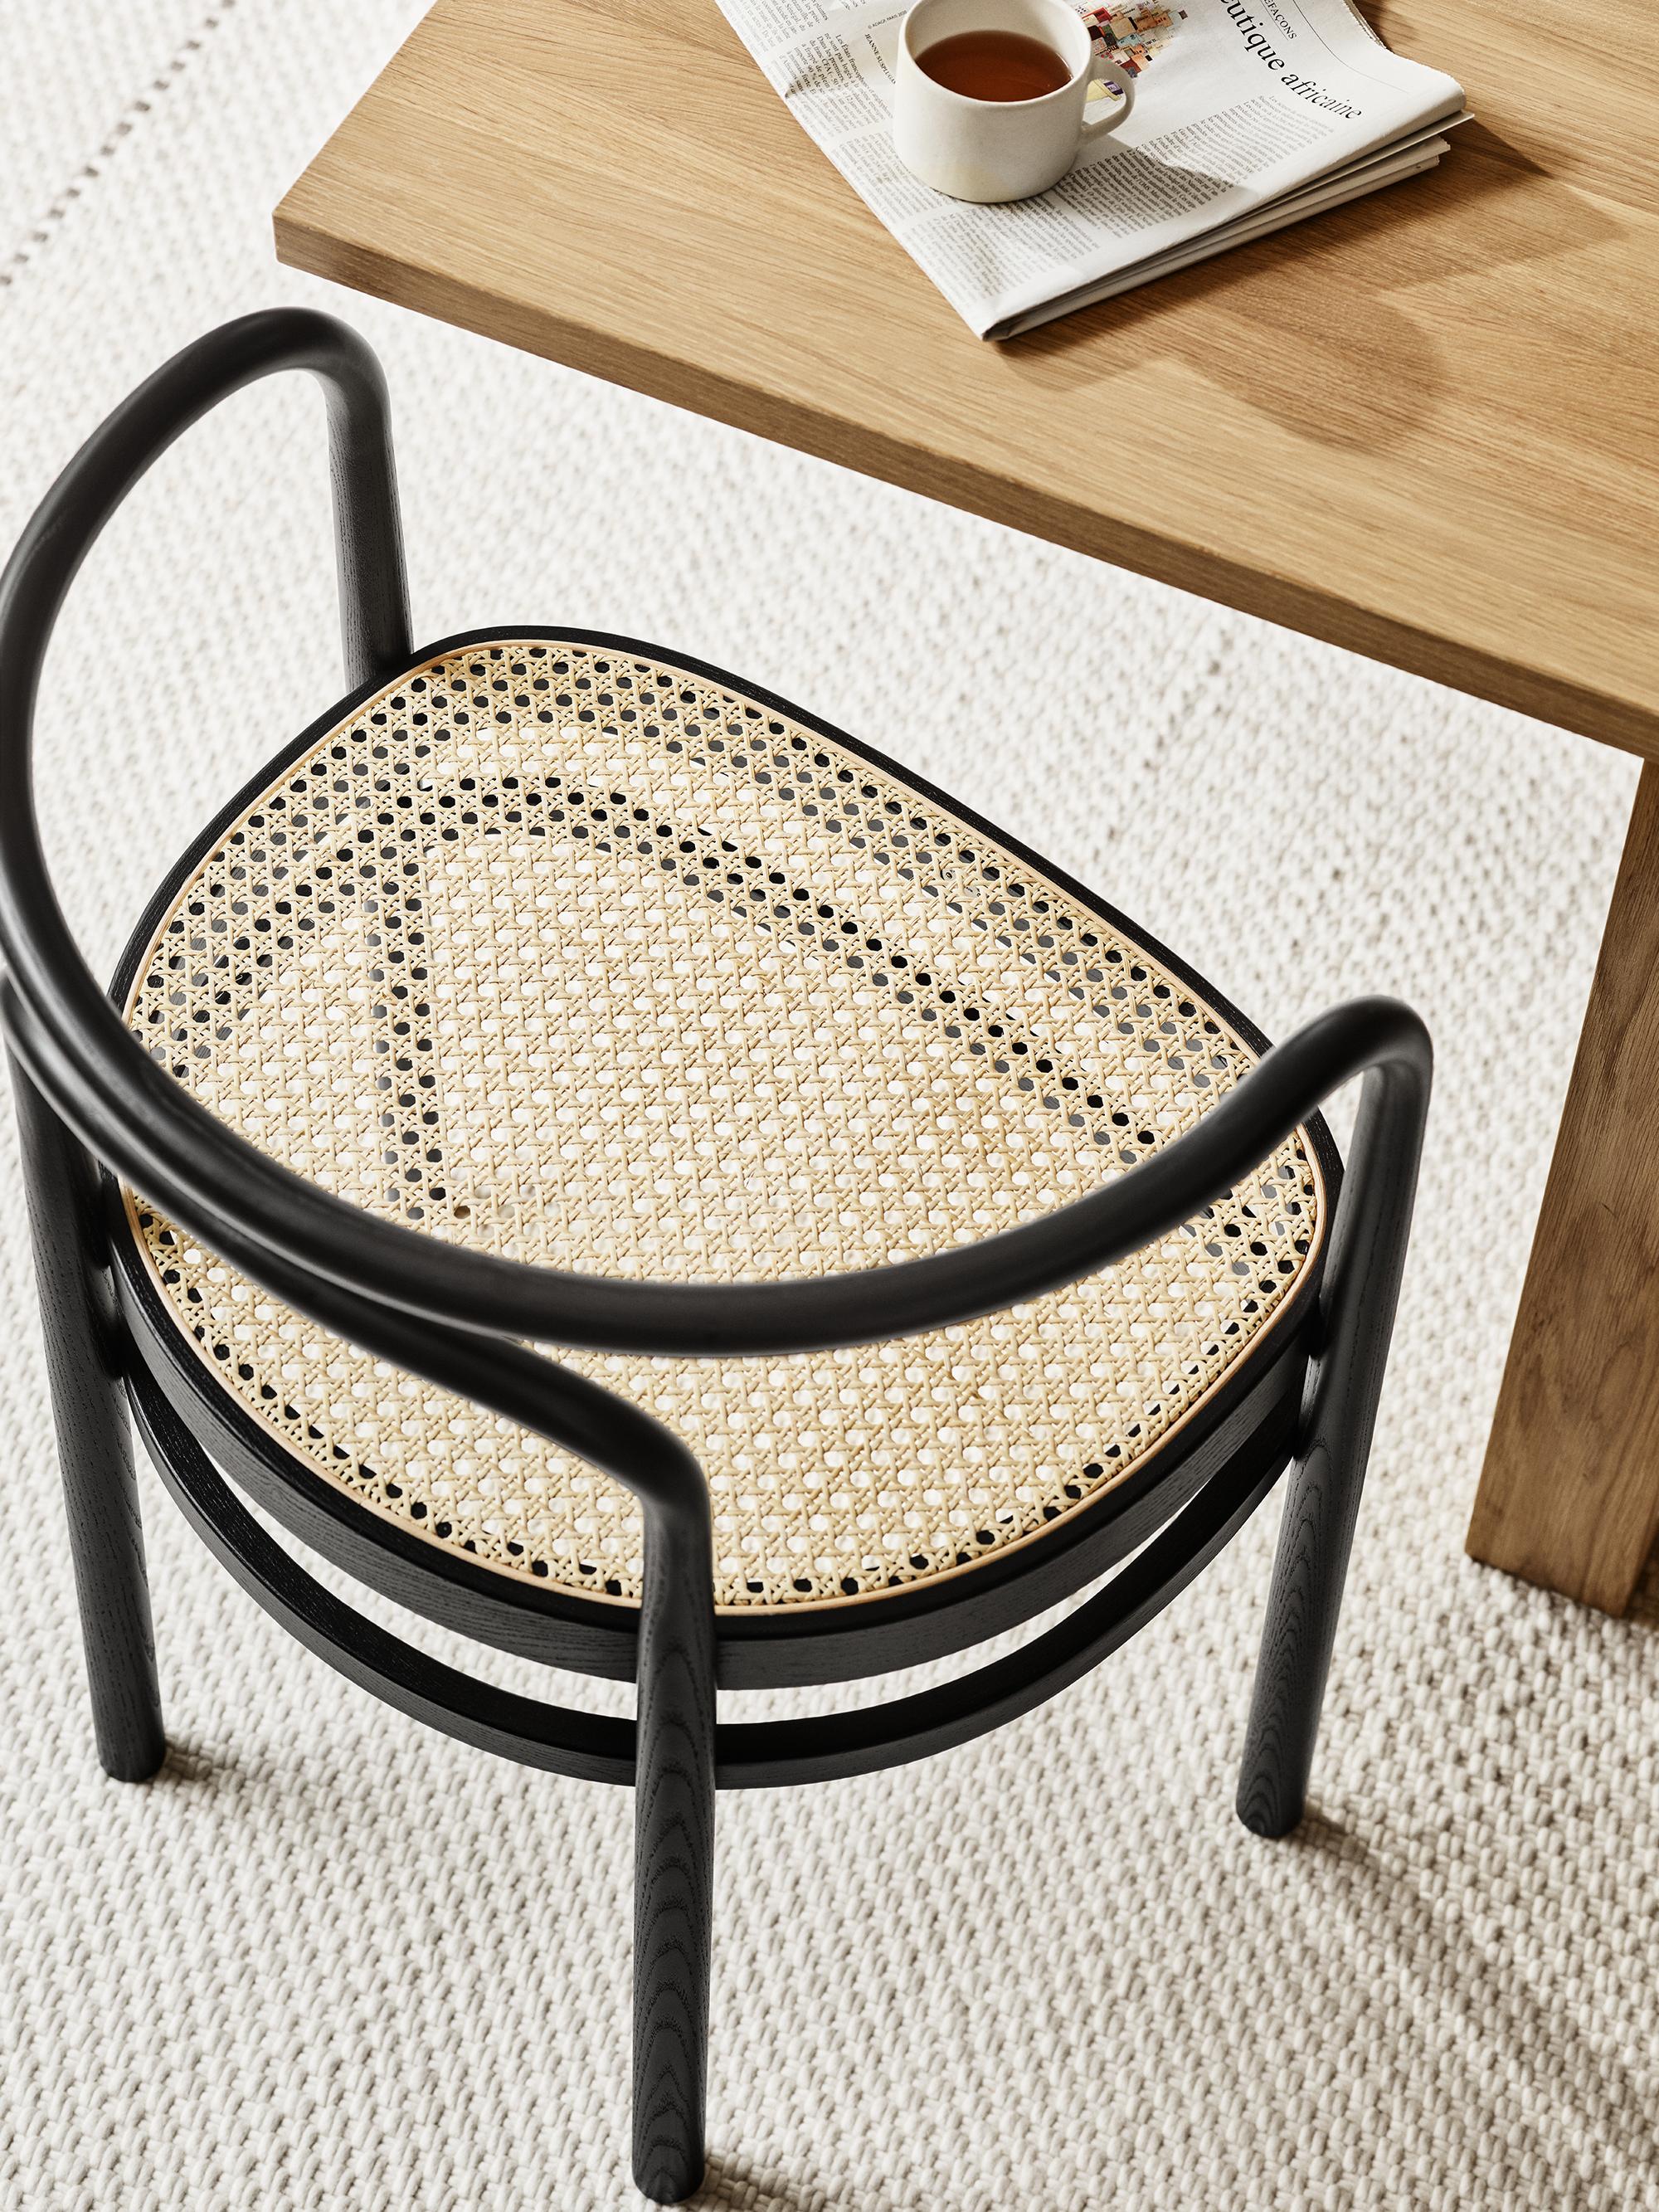 Poul Kjærholm 'PK15' Stuhl für Fritz Hansen aus schwarz gefärbter Esche.

Fritz Hansen wurde 1872 gegründet und ist zum Synonym für legendäres dänisches Design geworden. Die Marke kombiniert zeitlose Handwerkskunst mit einem Schwerpunkt auf